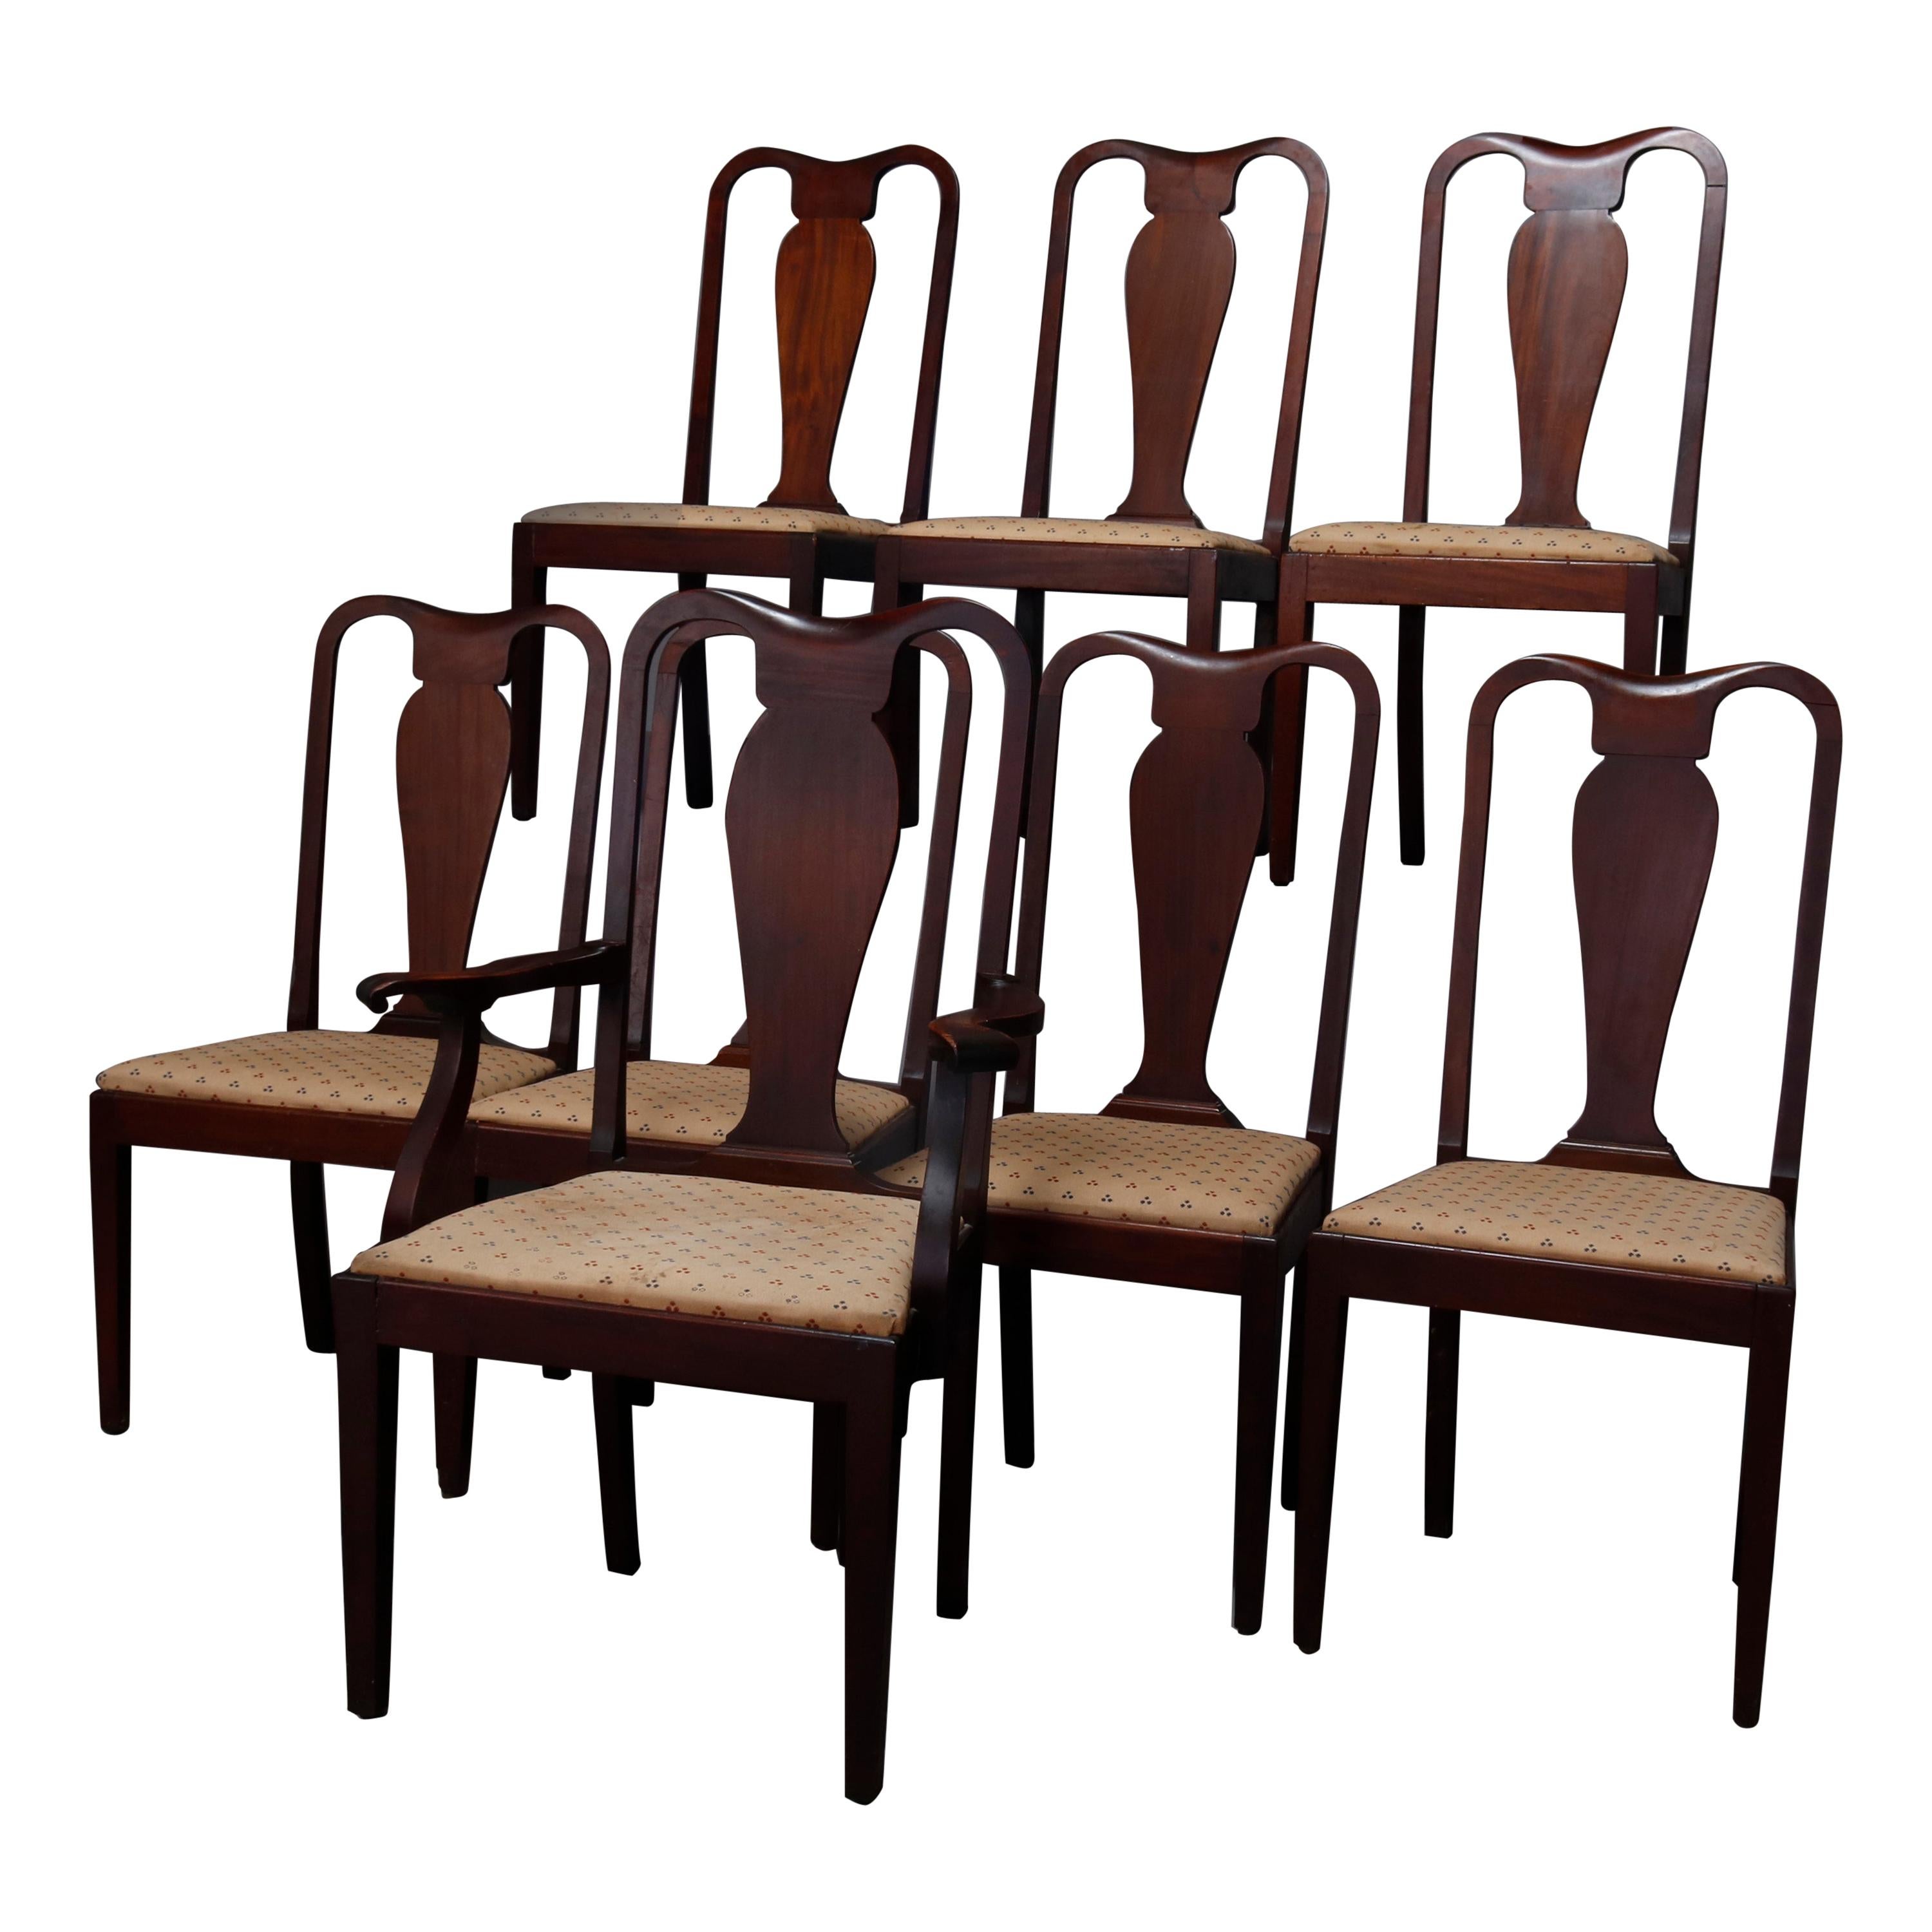 Set of 12 Vintage Hepplewhite Style Slat Back Mahogany Dining Chairs, circa 1930